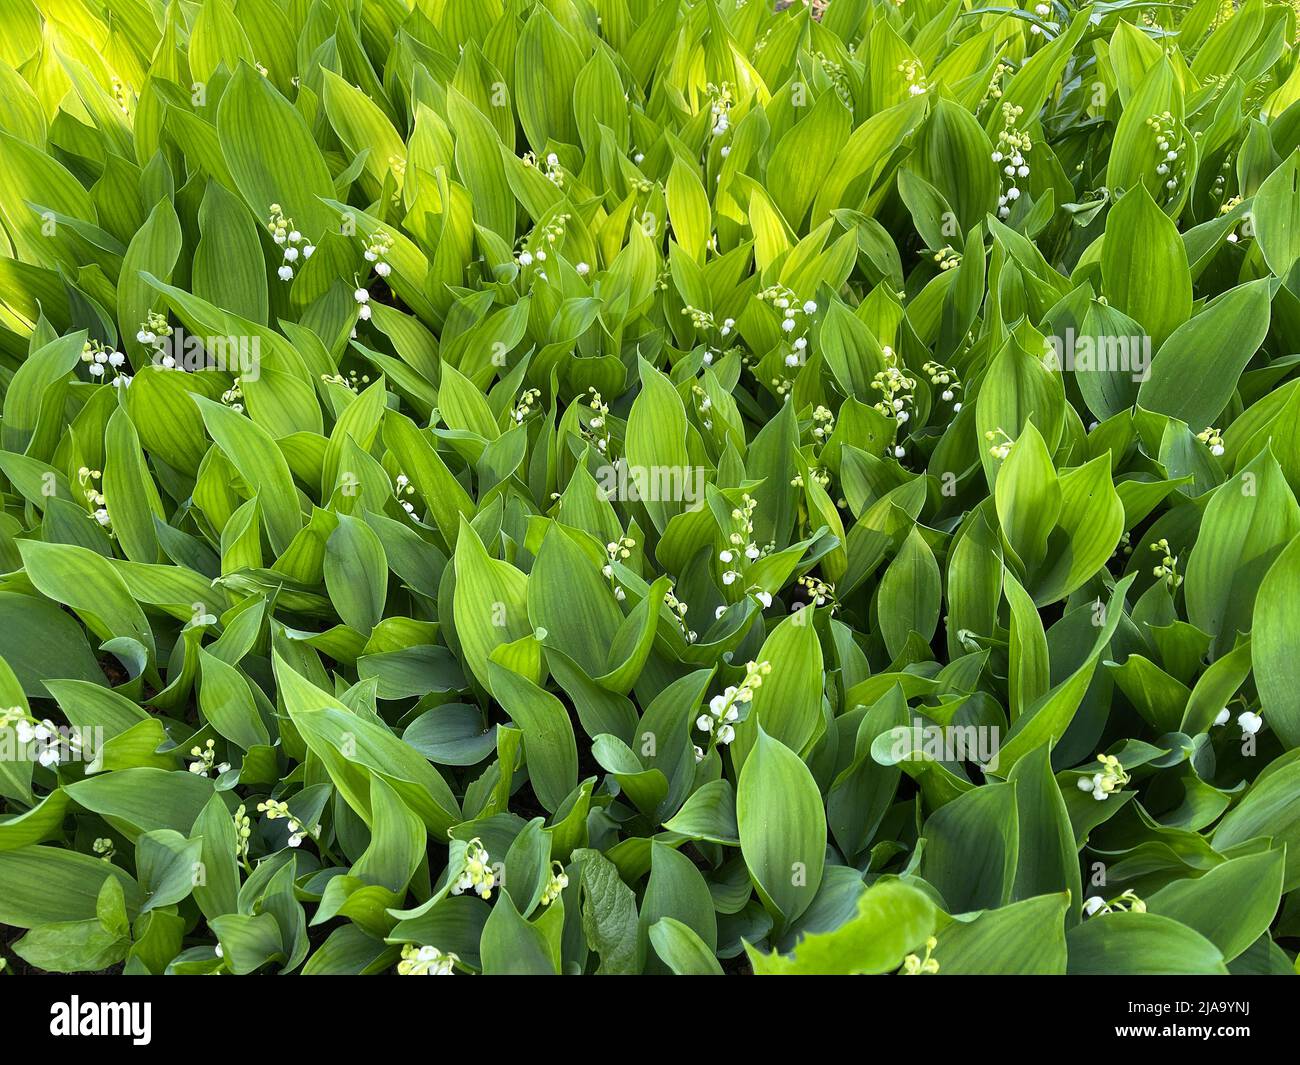 Maigloeckchen, Convallaria majalis hat weisse, Blueten. Sie ist eine Duft- und Giftpflanze und eine wichtige Heilpflanze, Lily-of-the-valley, Convalla Stock Photo